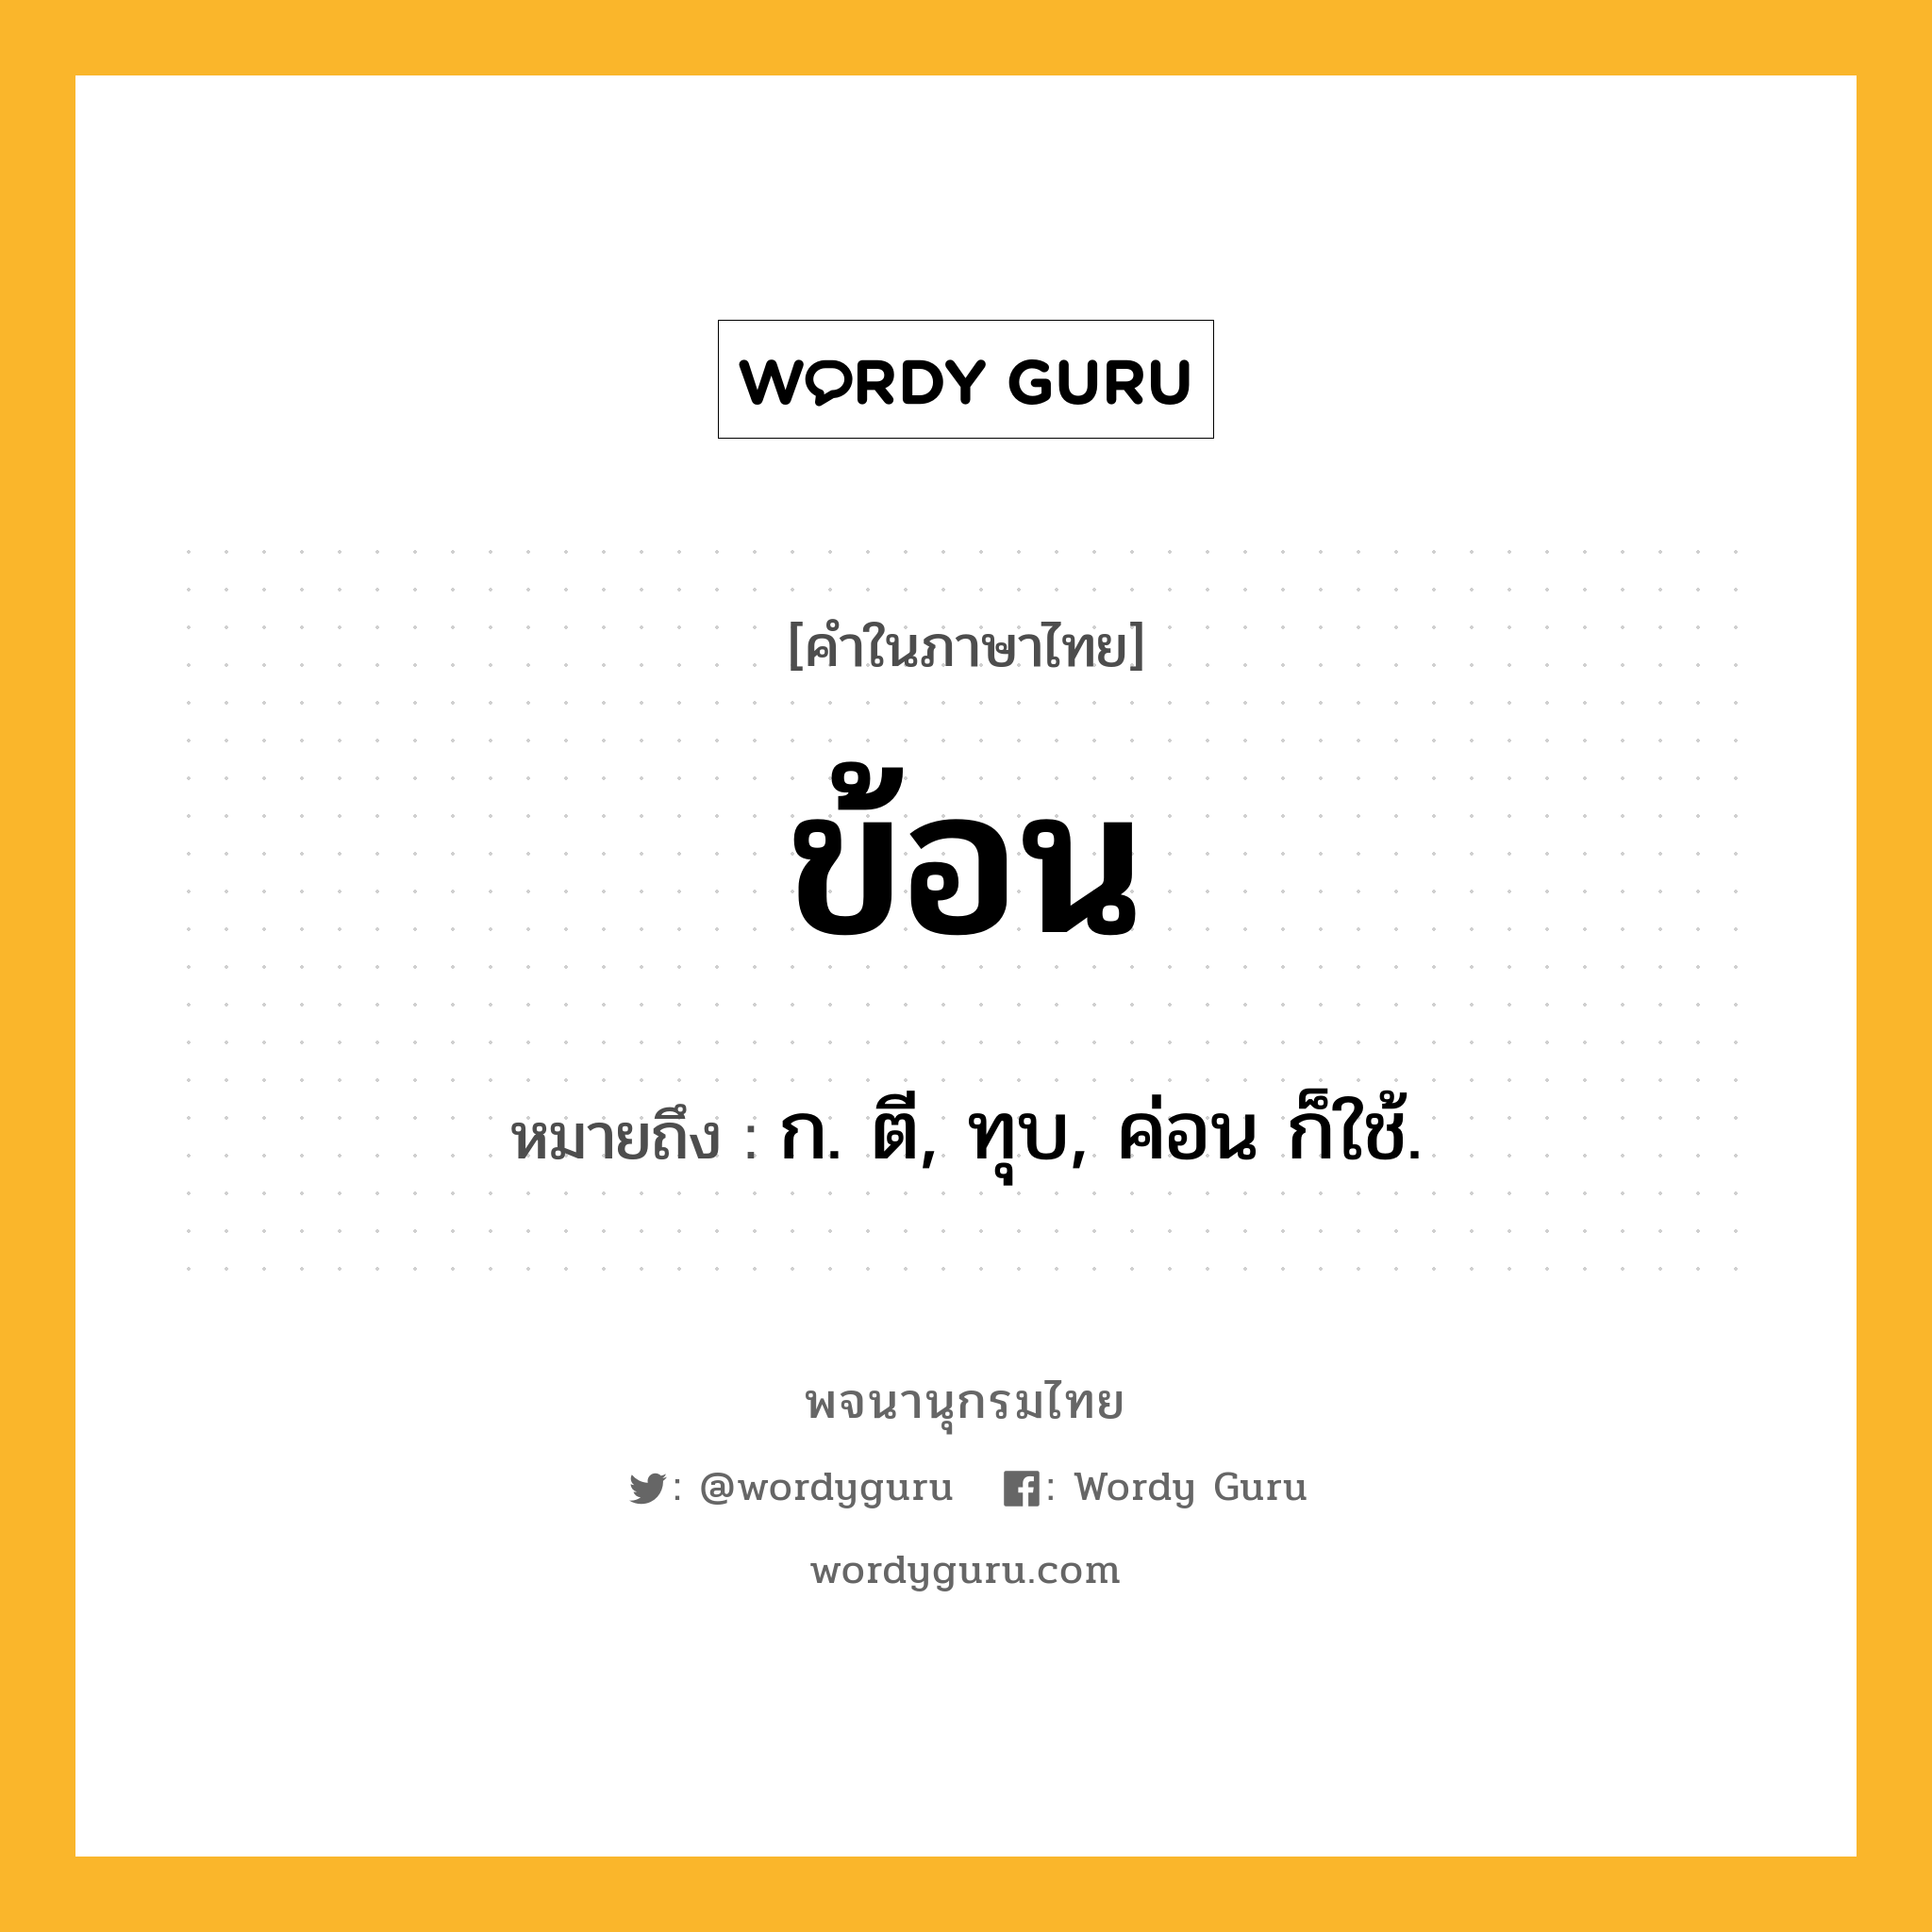 ข้อน หมายถึงอะไร?, คำในภาษาไทย ข้อน หมายถึง ก. ตี, ทุบ, ค่อน ก็ใช้.